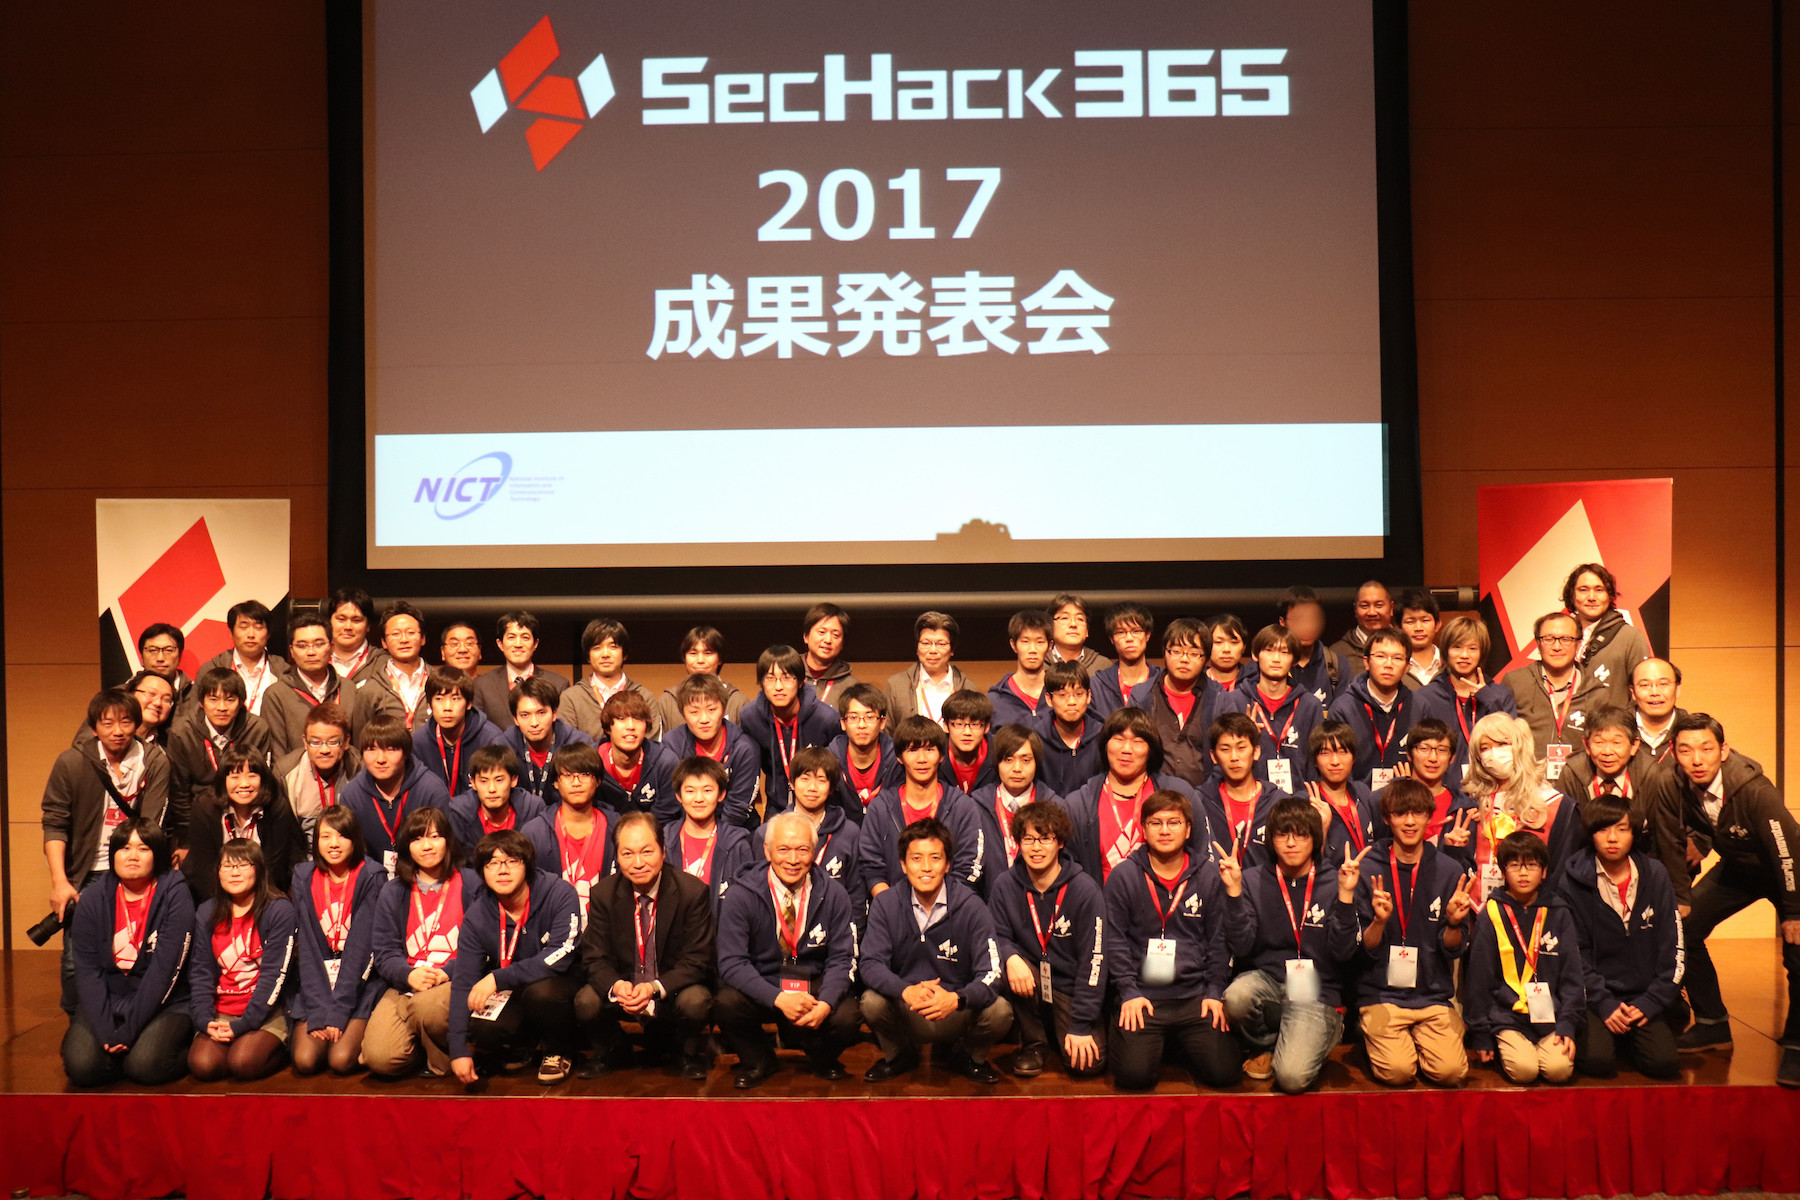 全員の集合写真 SecHack365 2017年度の成果発表会にて